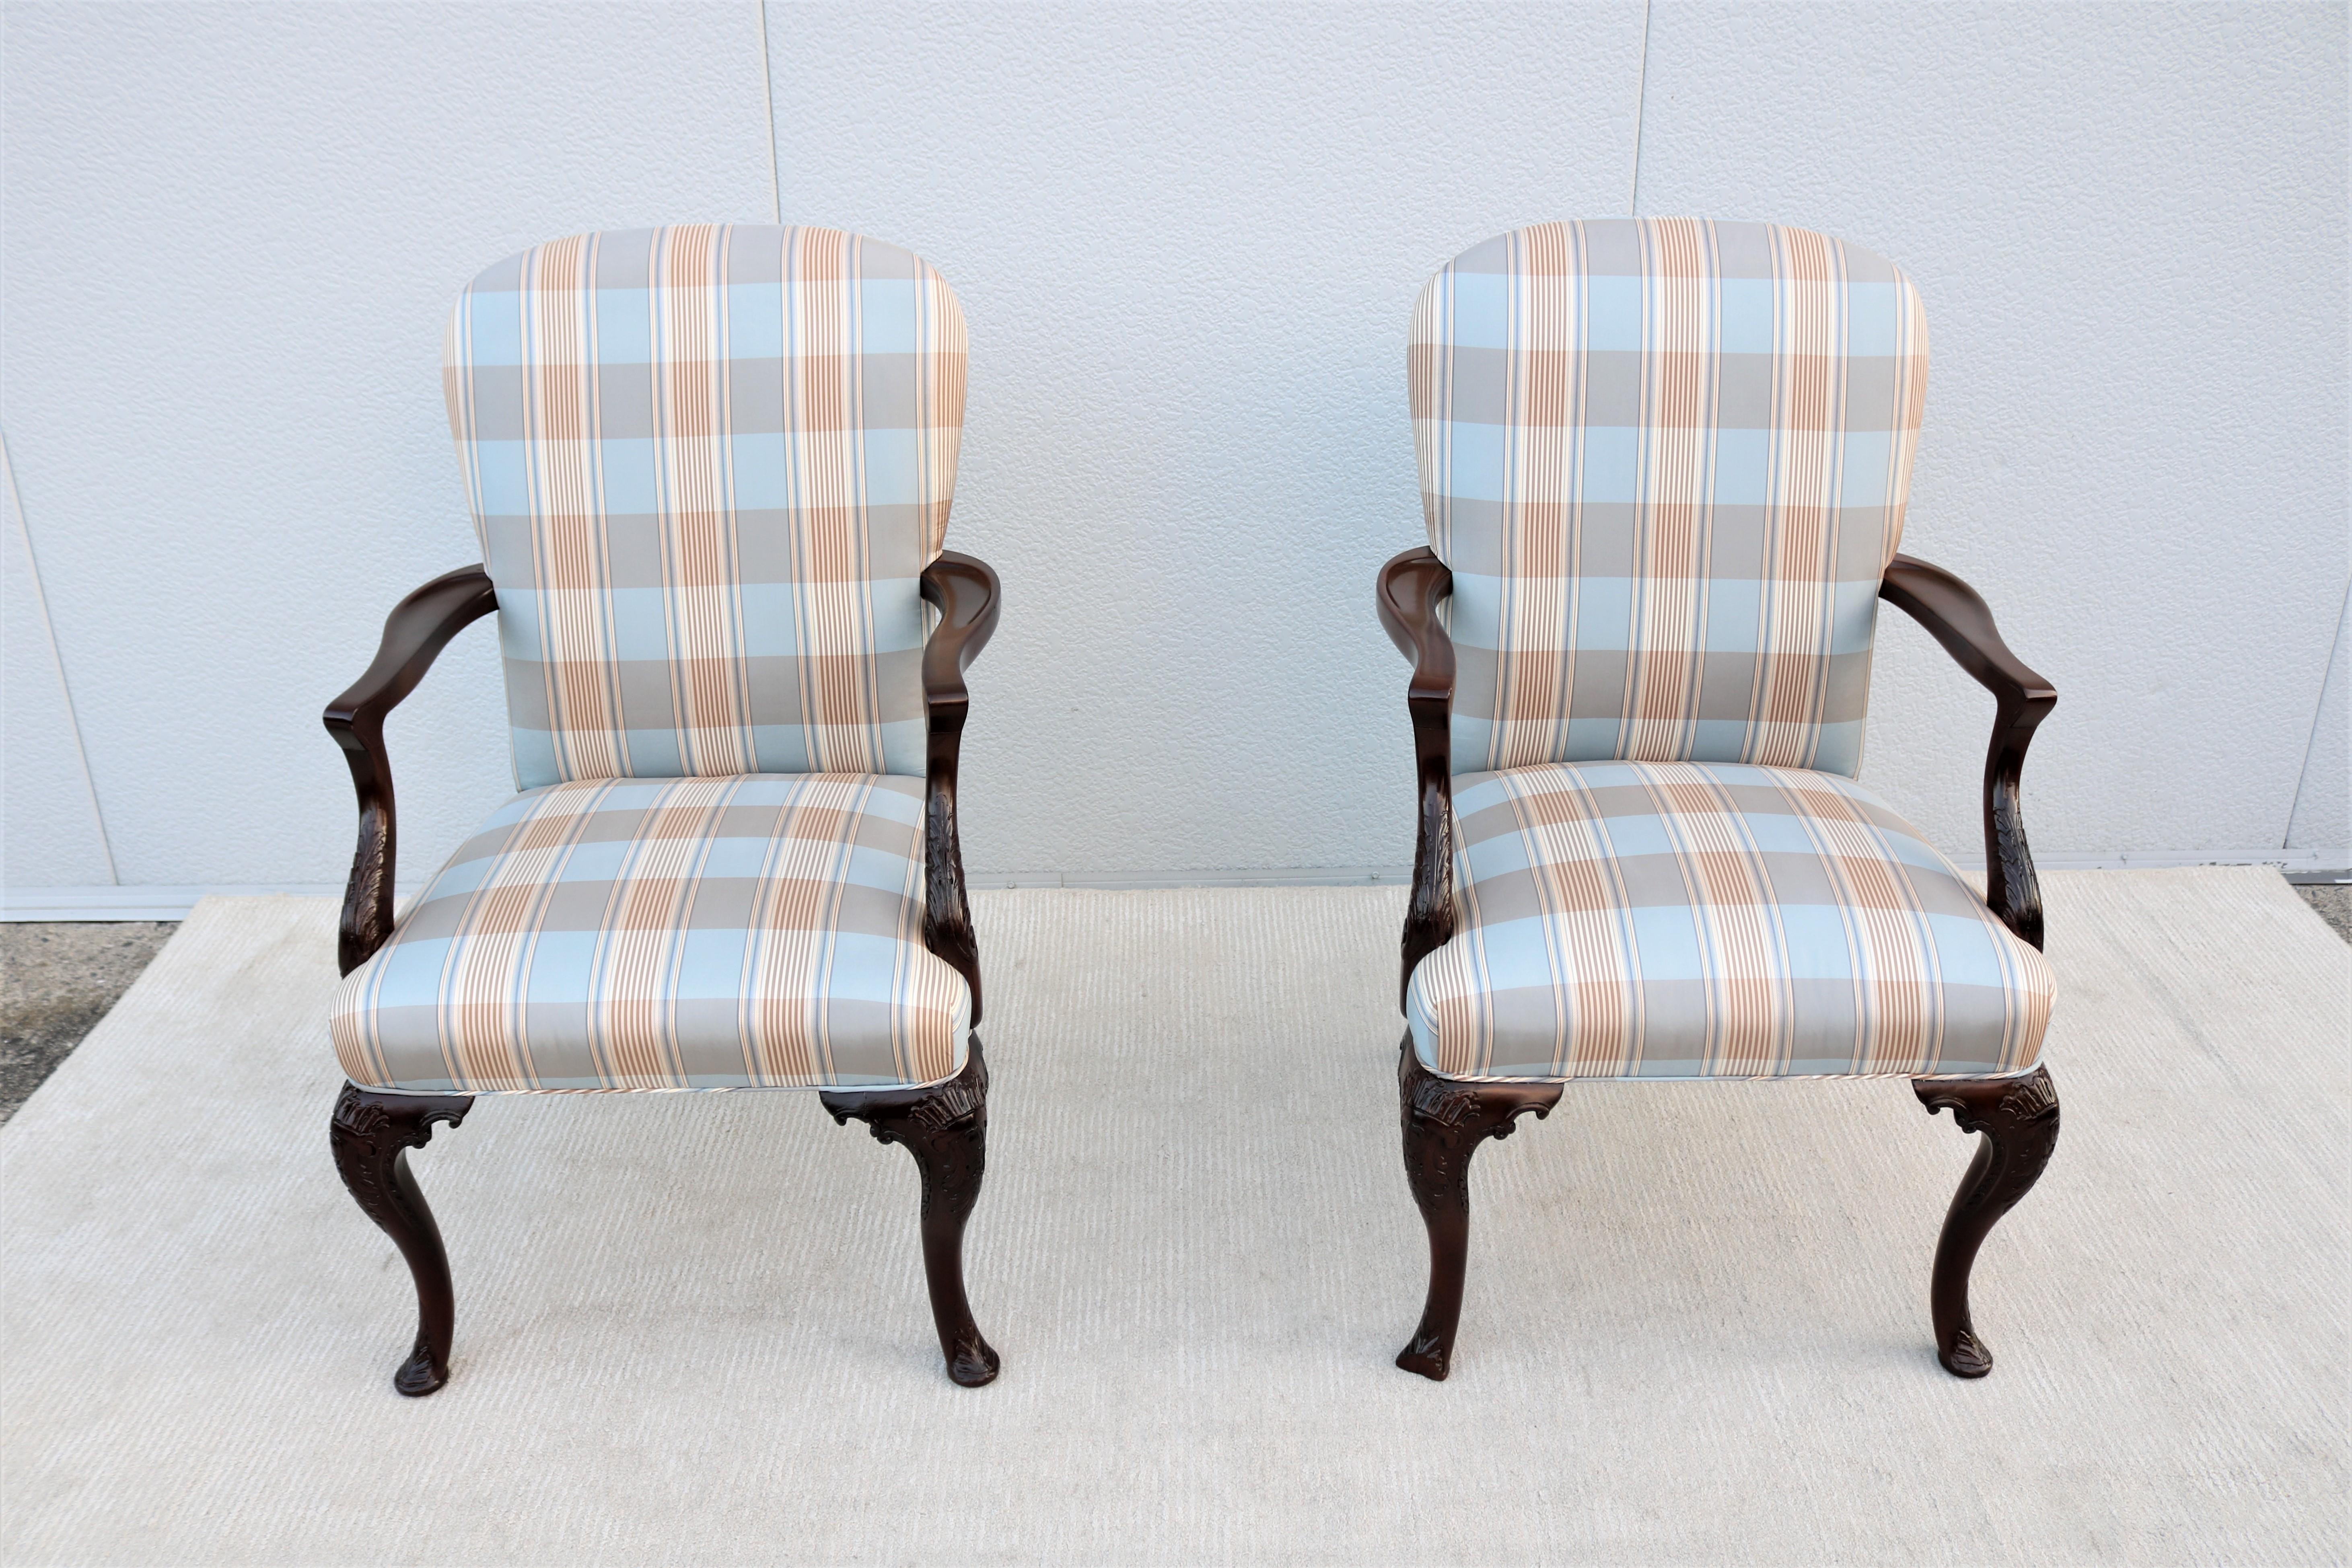 Diese fabelhaften offenen Sessel im klassischen englischen Queen Anne-Stil sind außergewöhnlich gestaltet und handgefertigt.
Ein klassischer, zeitloser und luxuriöser Stil, inspiriert von Stücken der amerikanischen und europäischen Antike aus dem